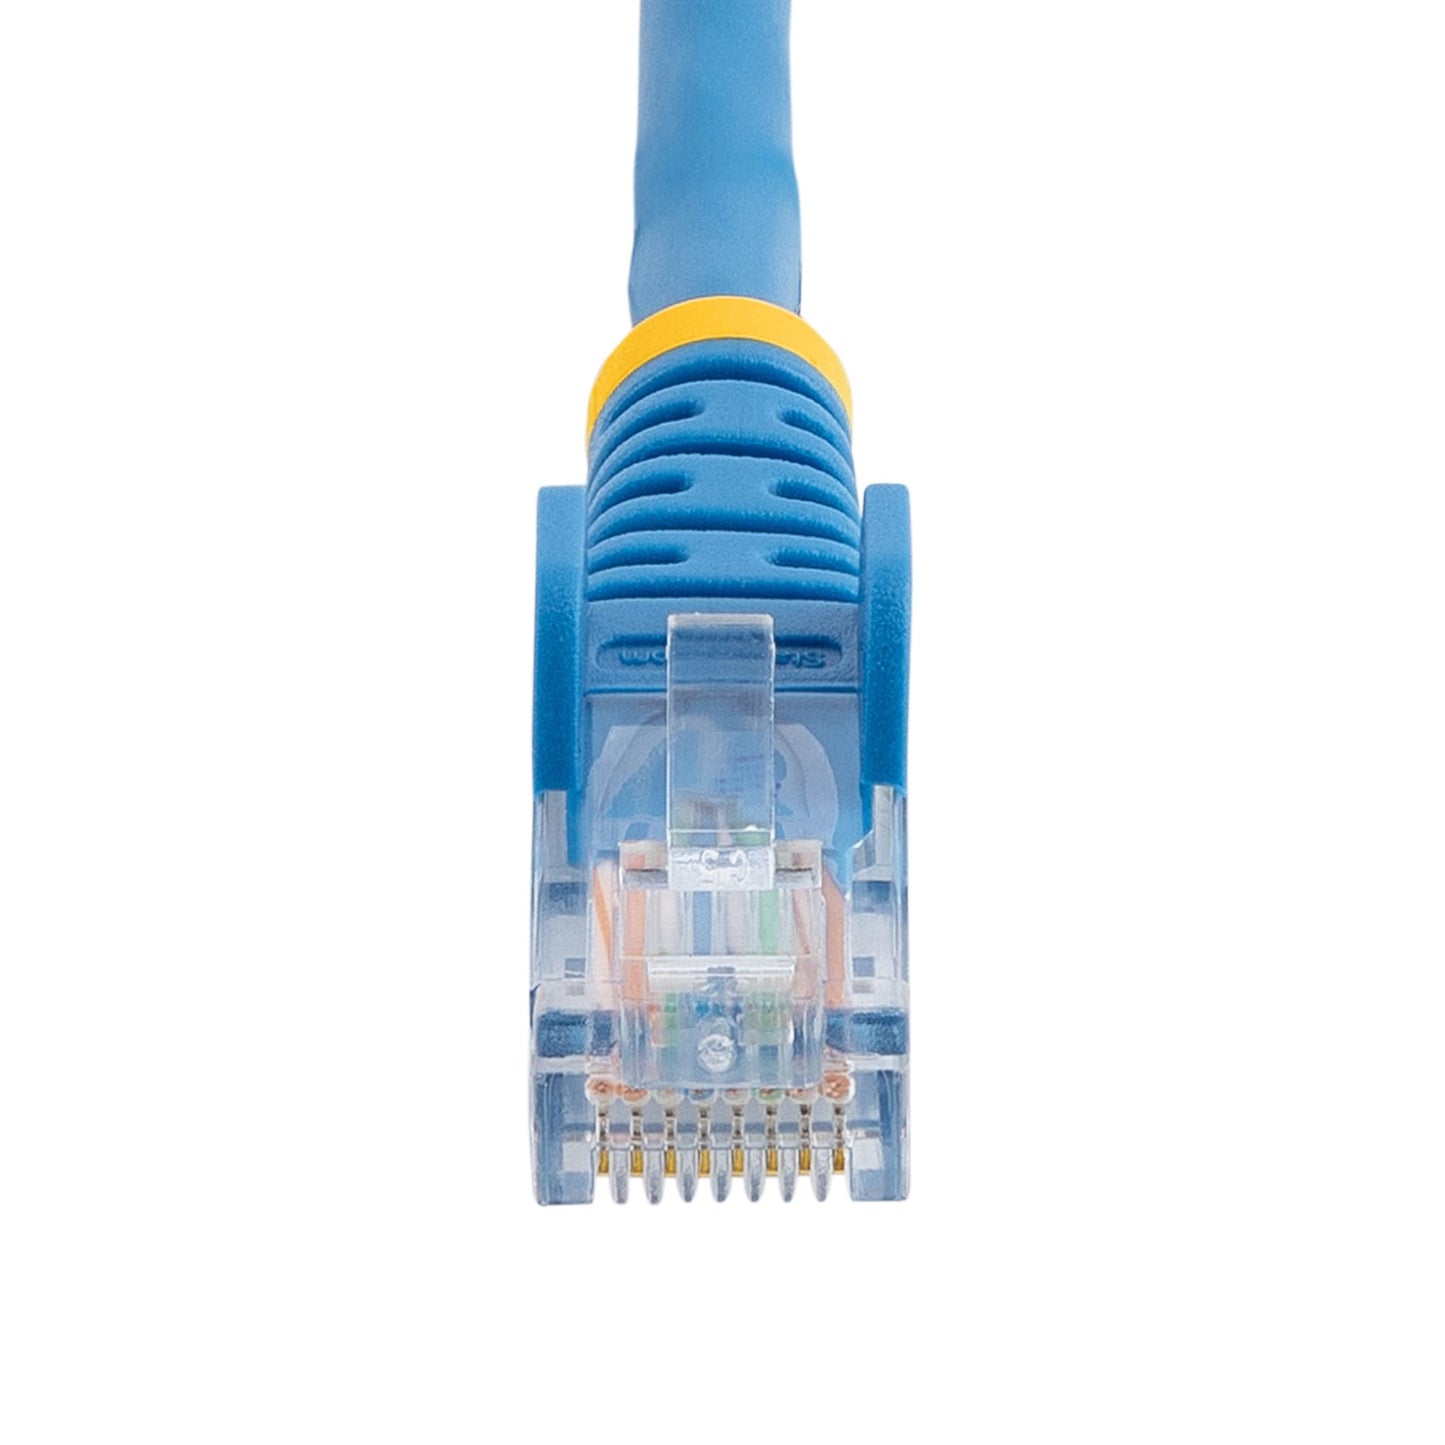 StarTech.com Cat5e Ethernet Patch Cable with Snagless RJ45 Connectors - 0.5 m, Blue-3